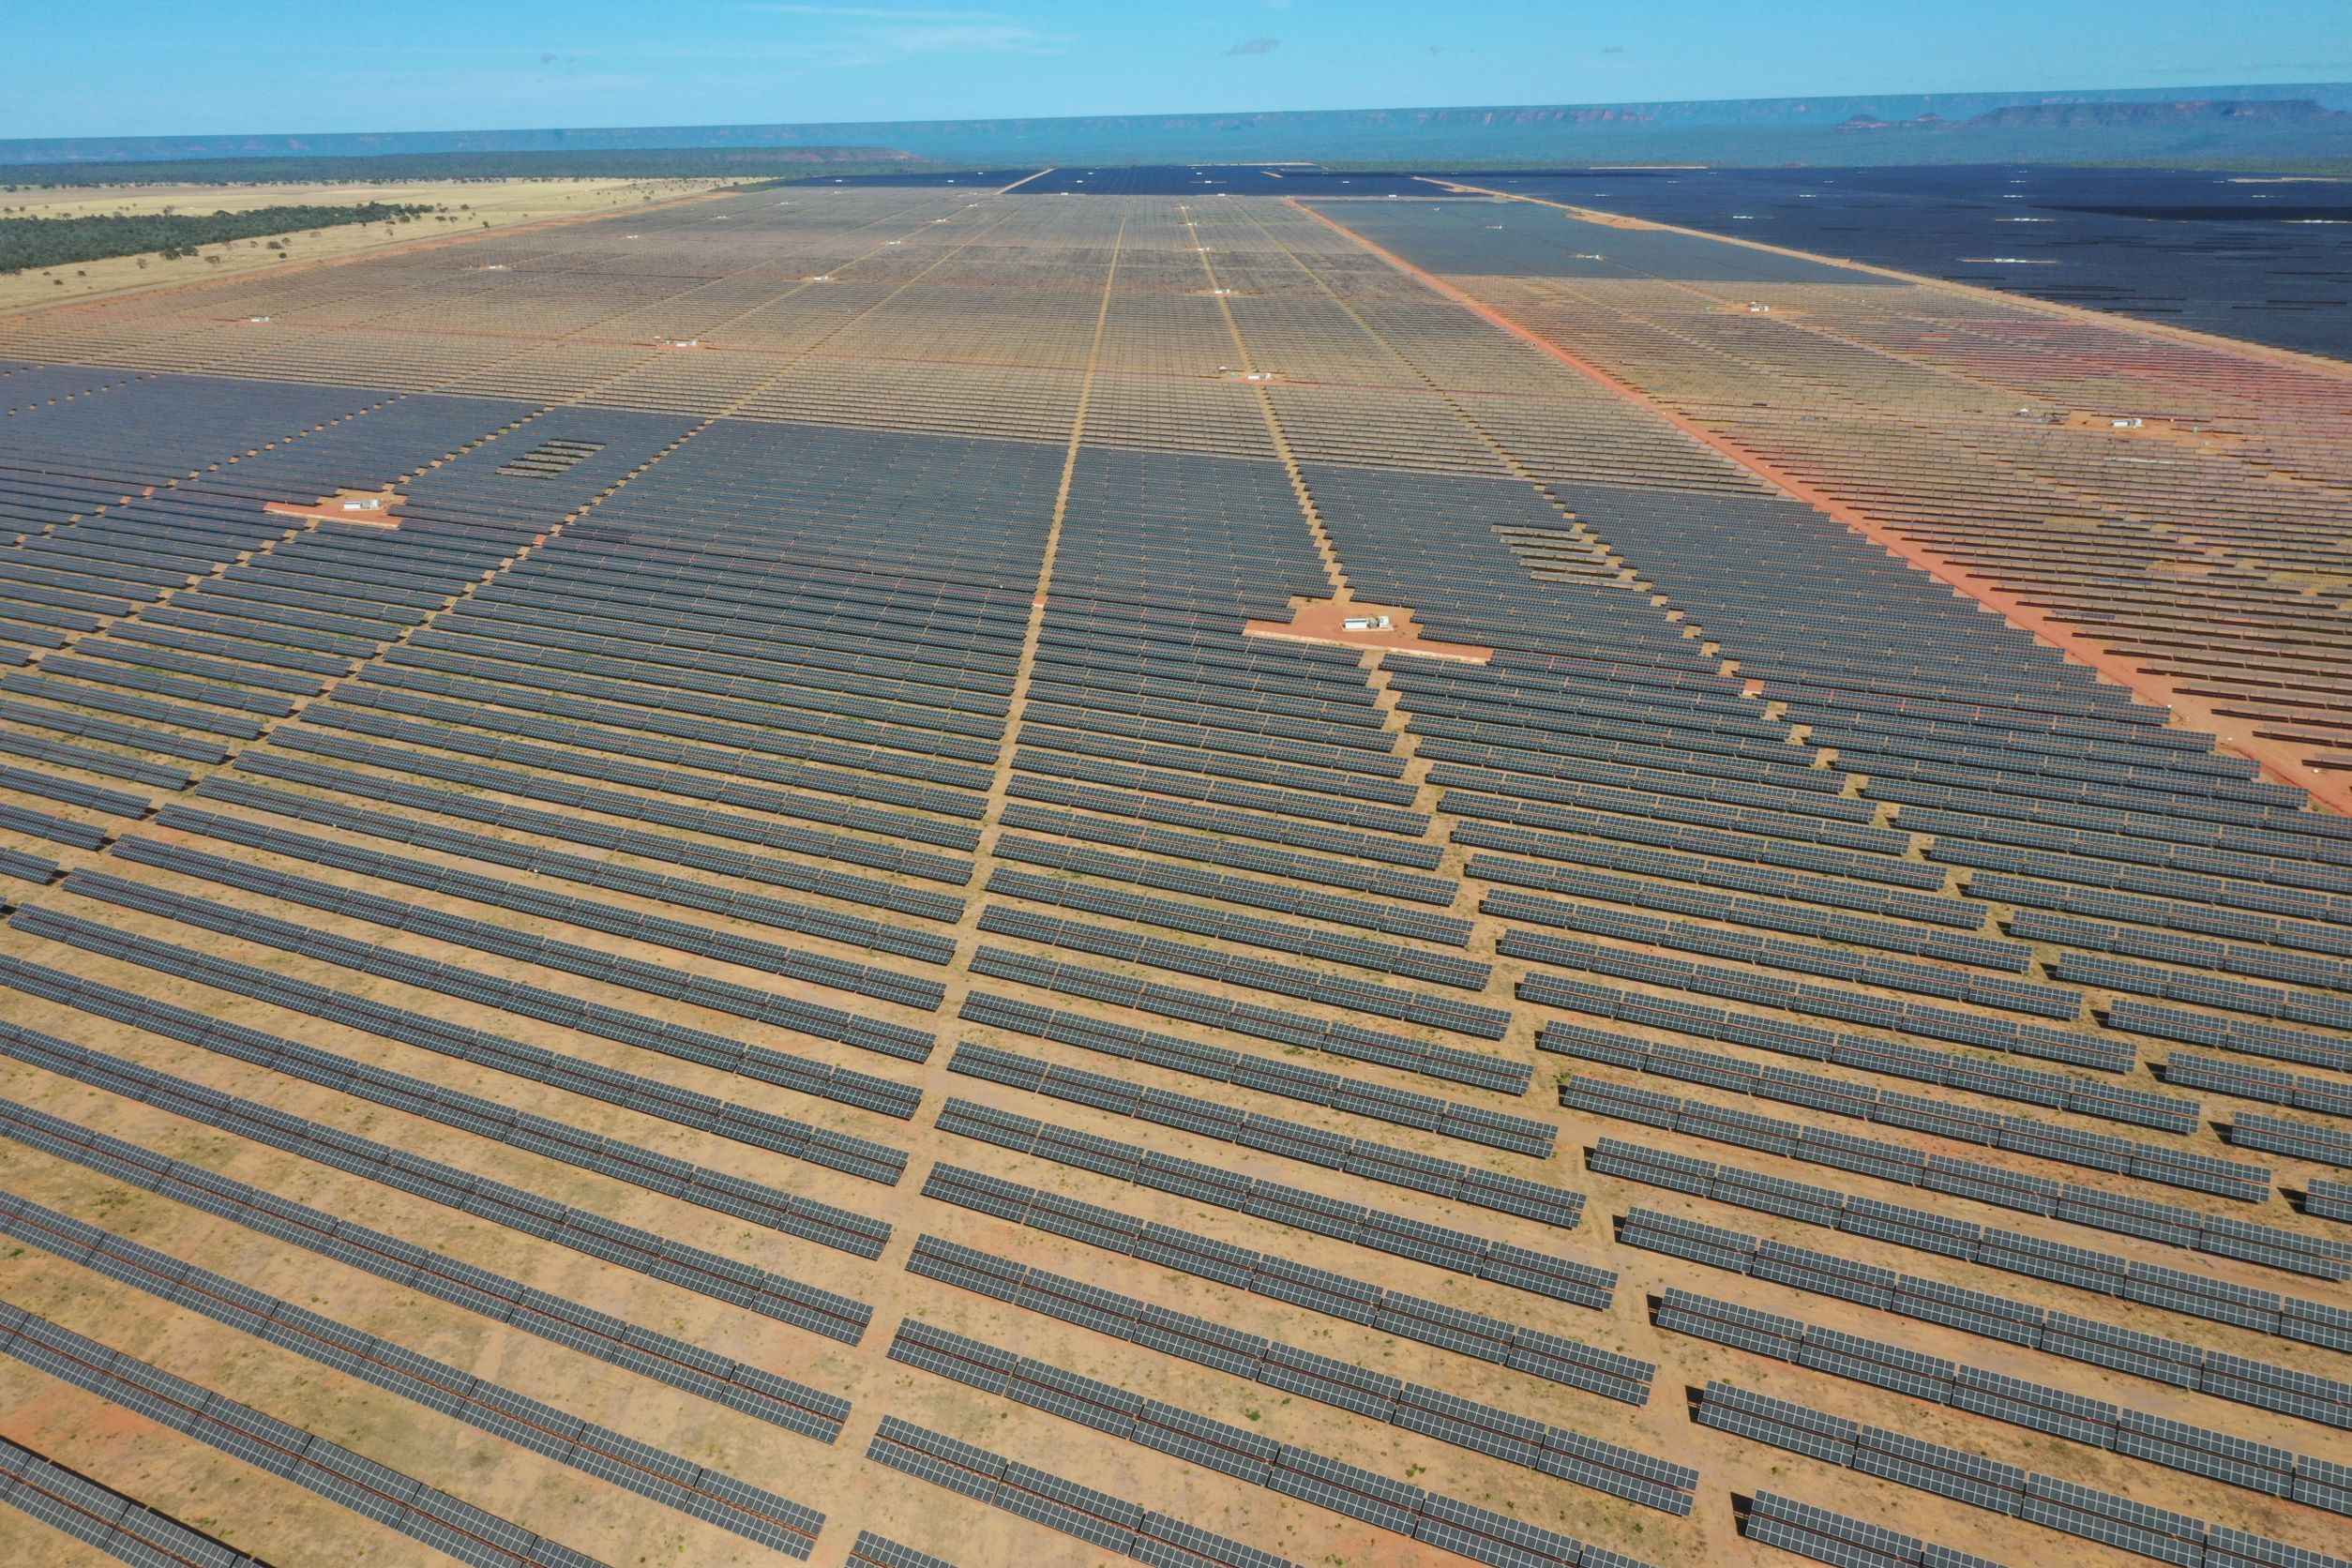 Parque solar São Gonçalo, da Enel, no Piauí, está entre as 10 maiores usinas solares do Brasil. Crédito: Enel/Divulgação